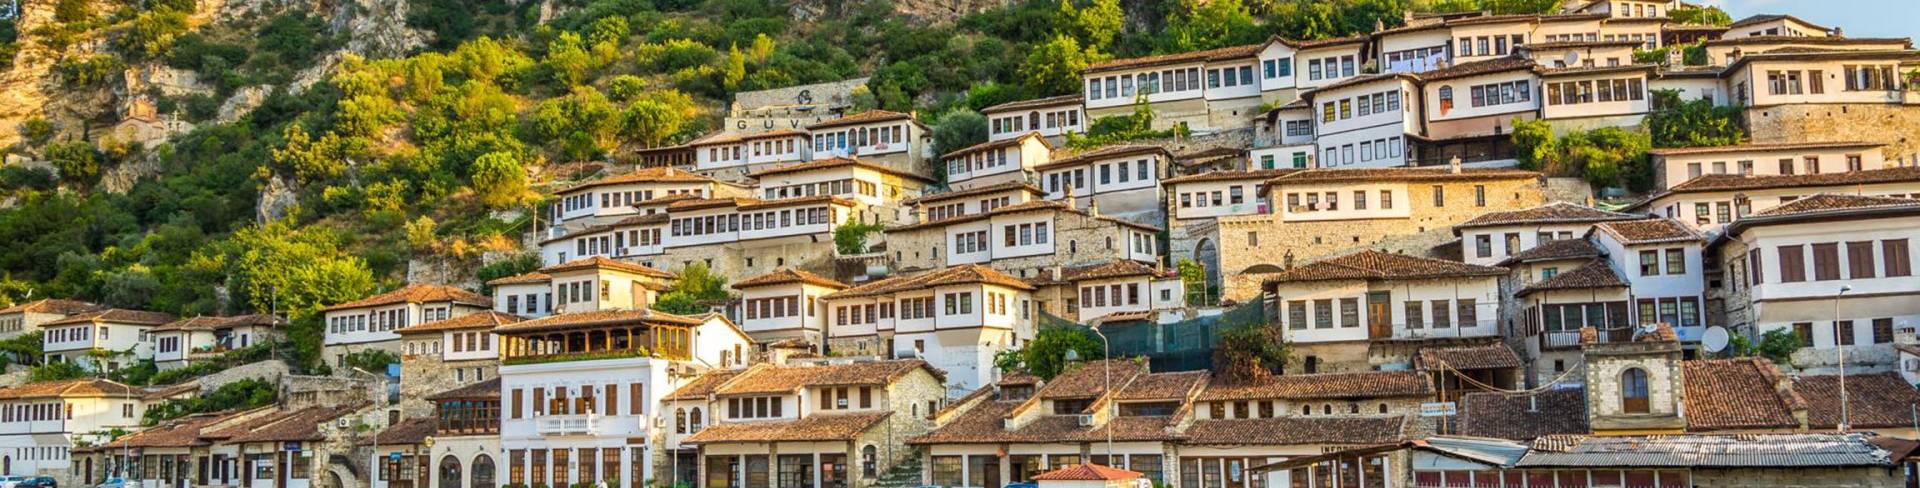 Берат - город в Албании